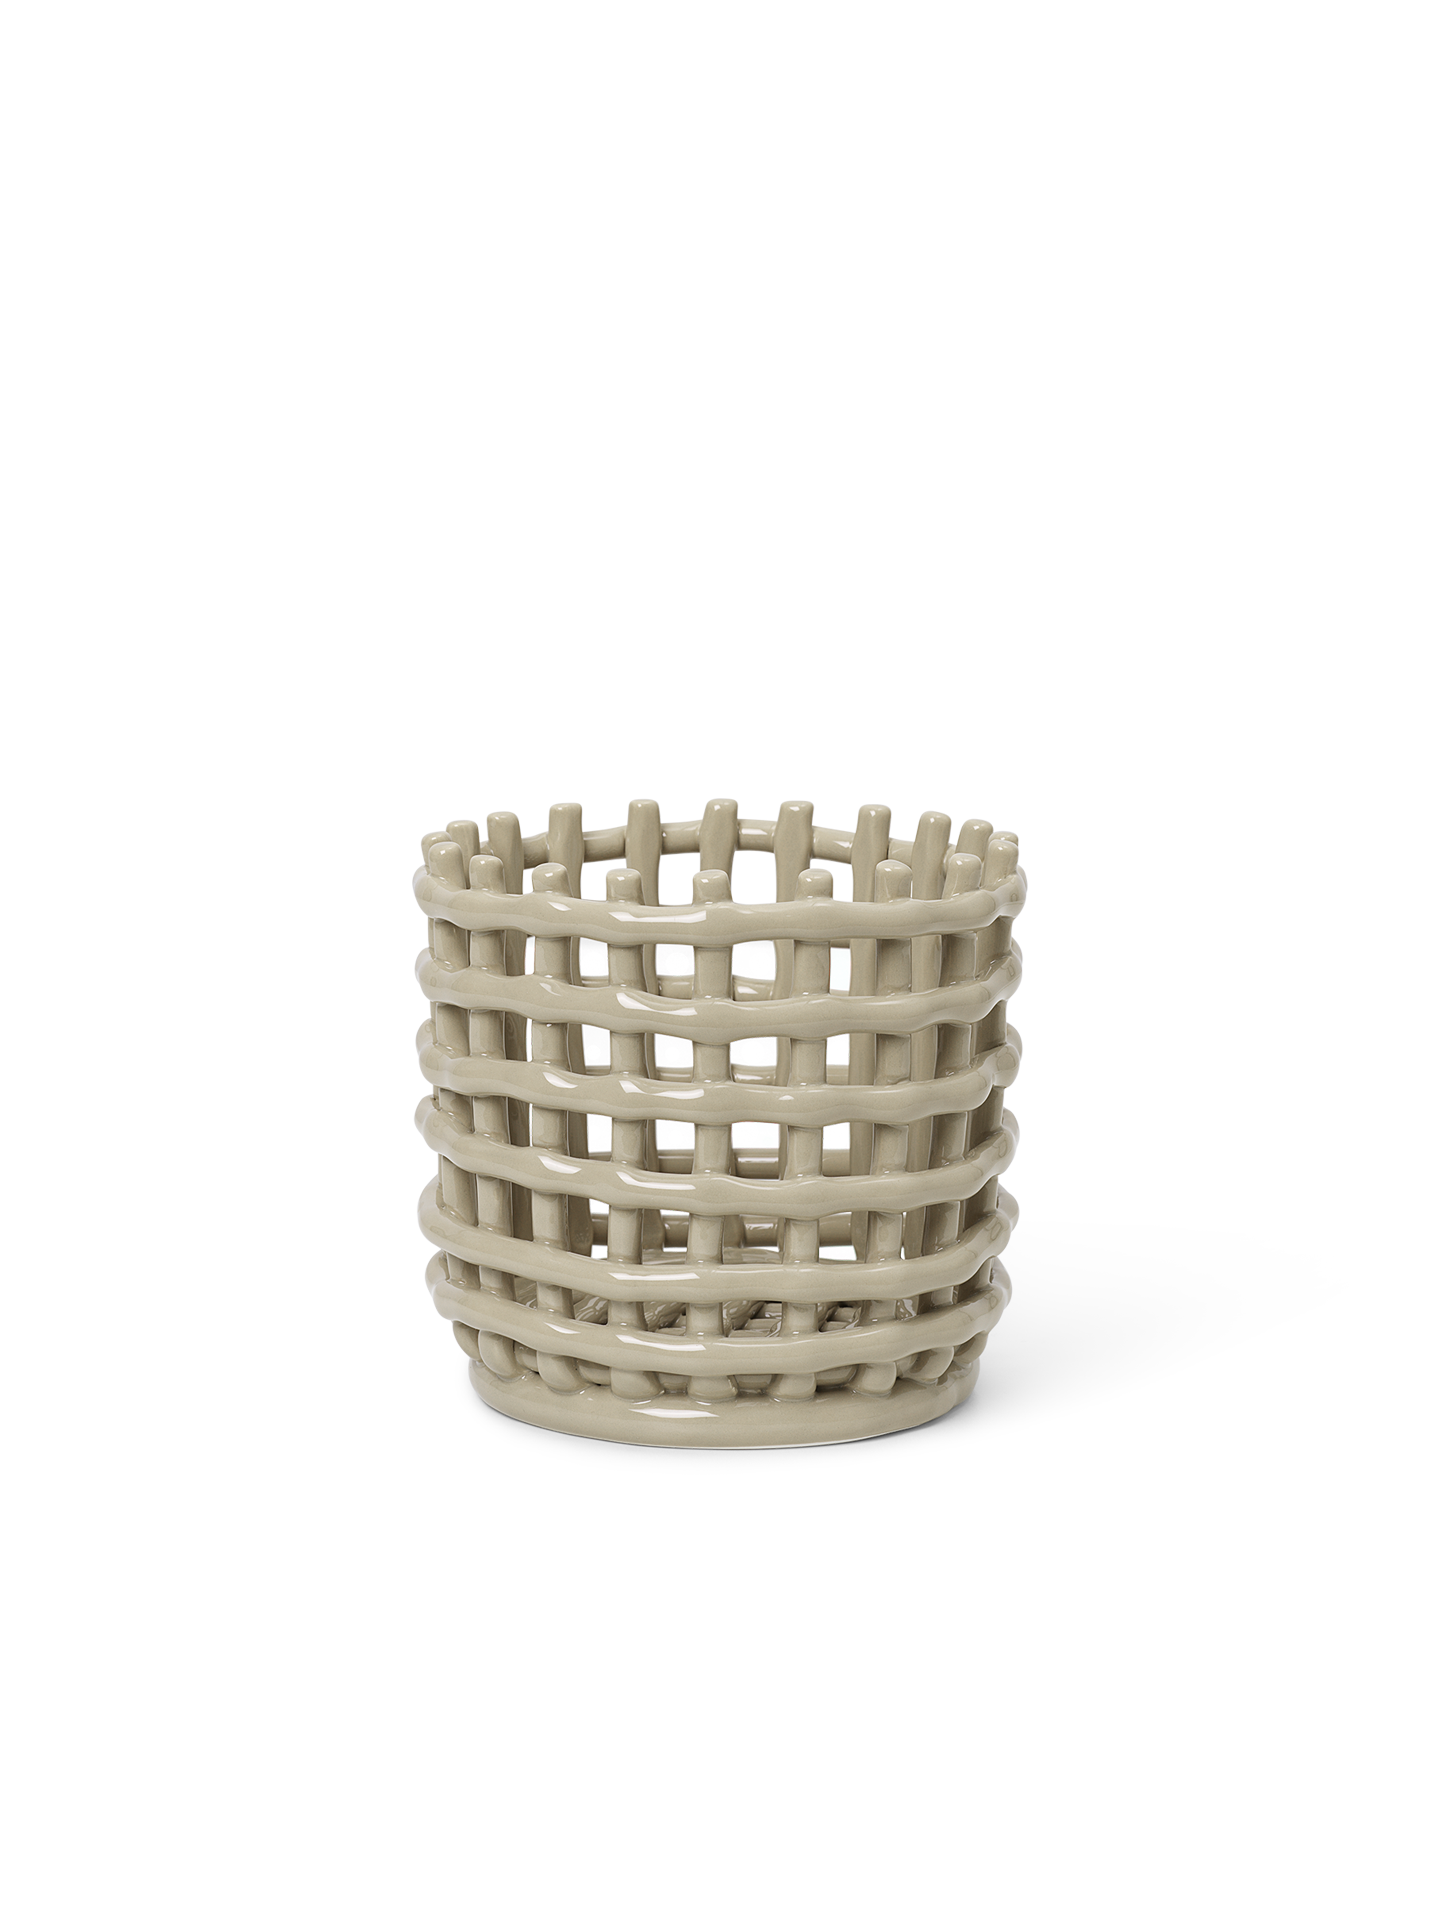 ferm living Ceramic Basket Cashmere small